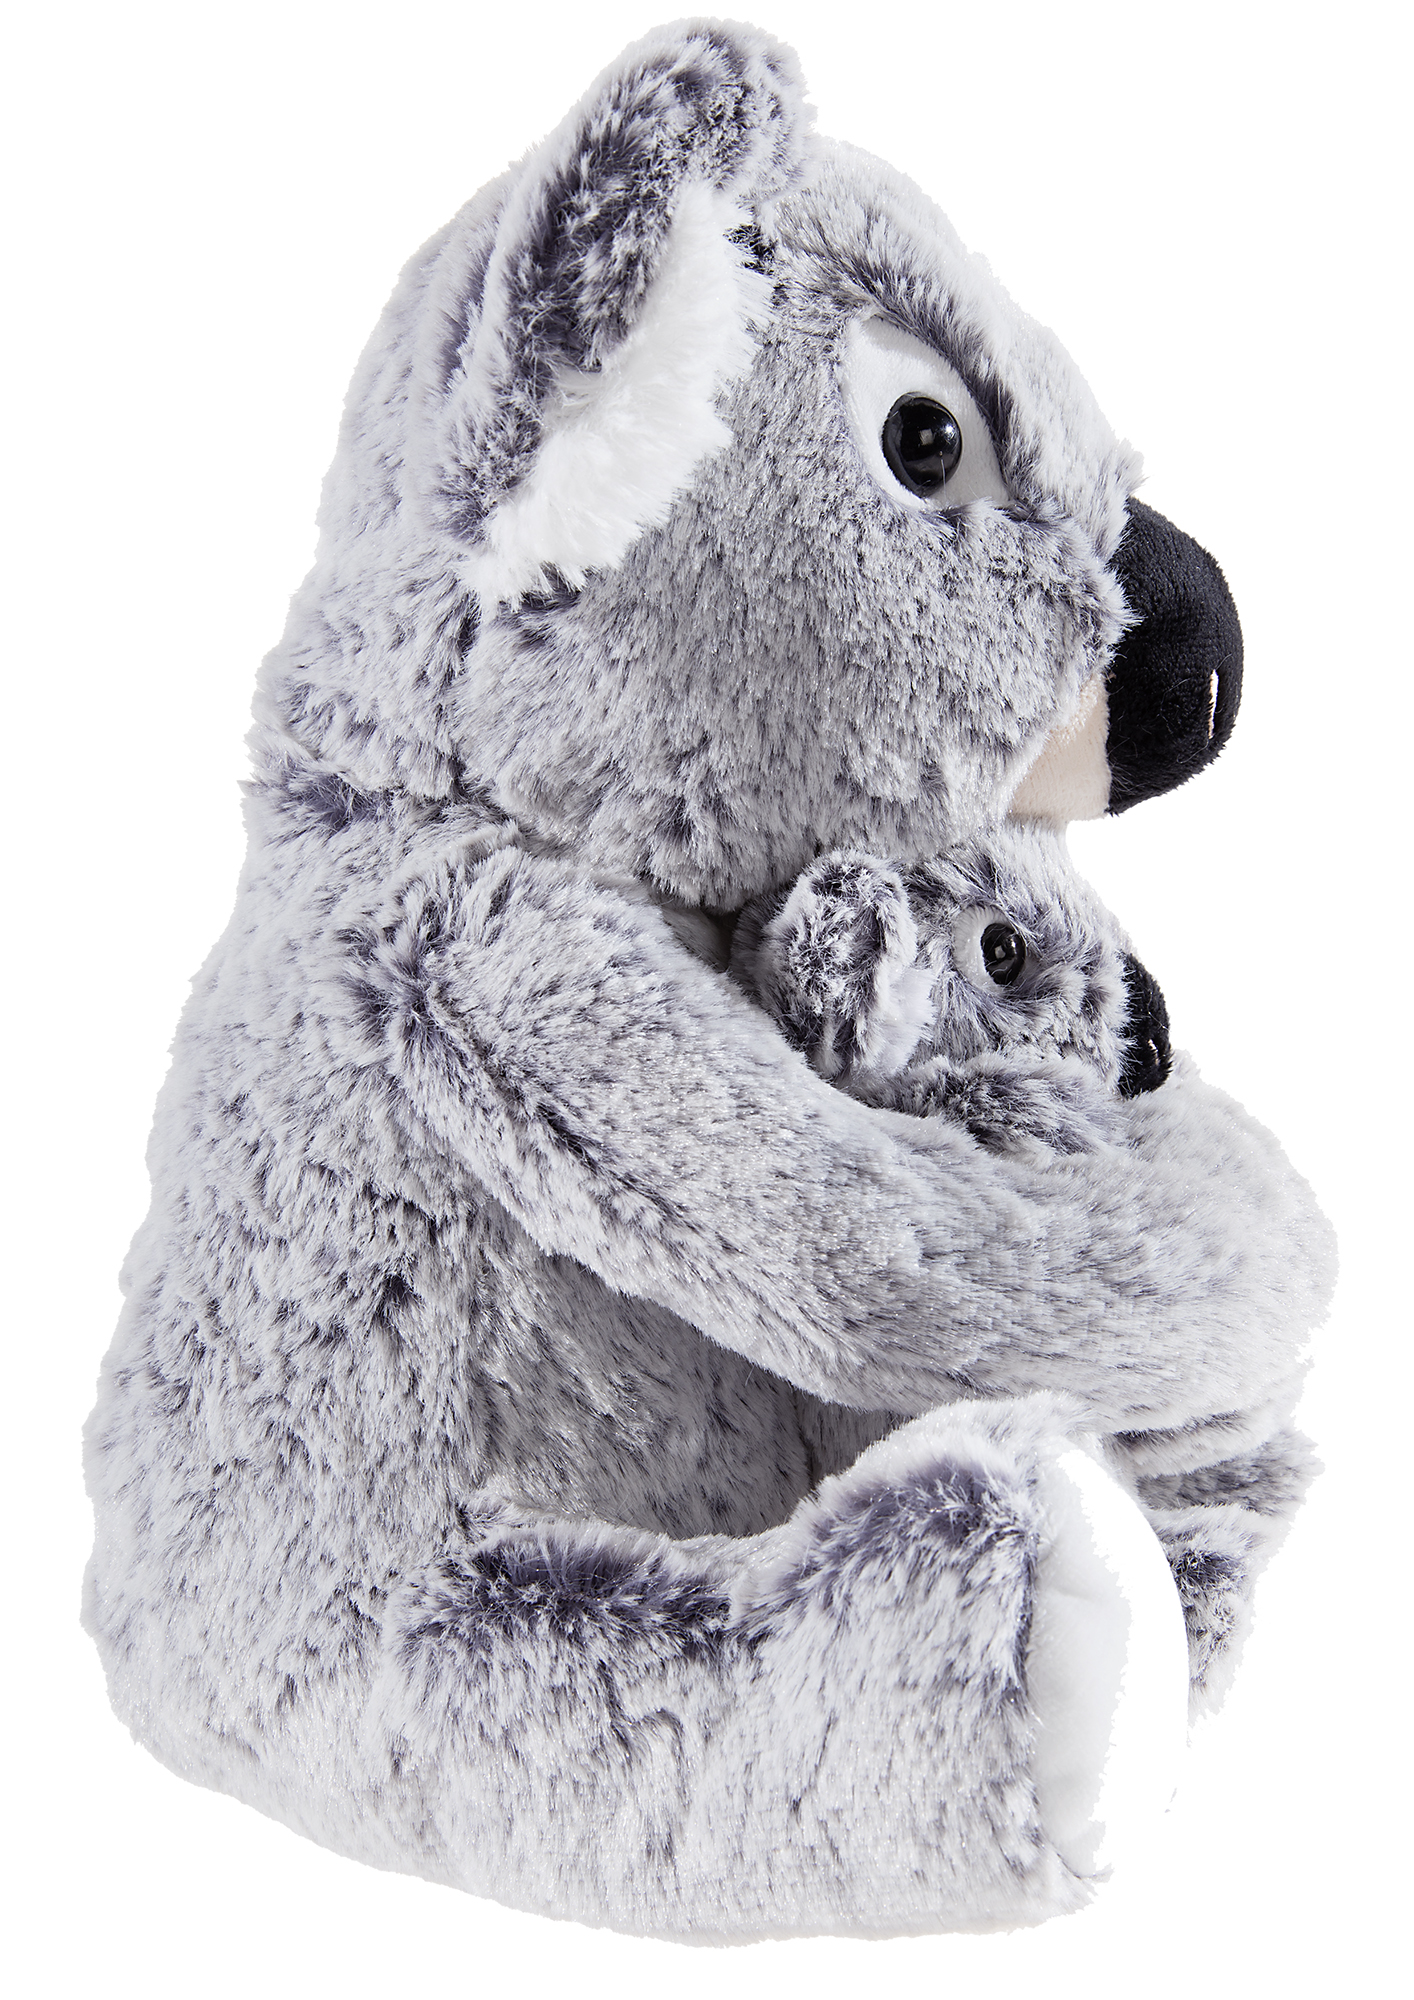 Heunec Koala Bär mit Kind aus der Misanimo Serie in 27cm Größe - Detailbild seitlich